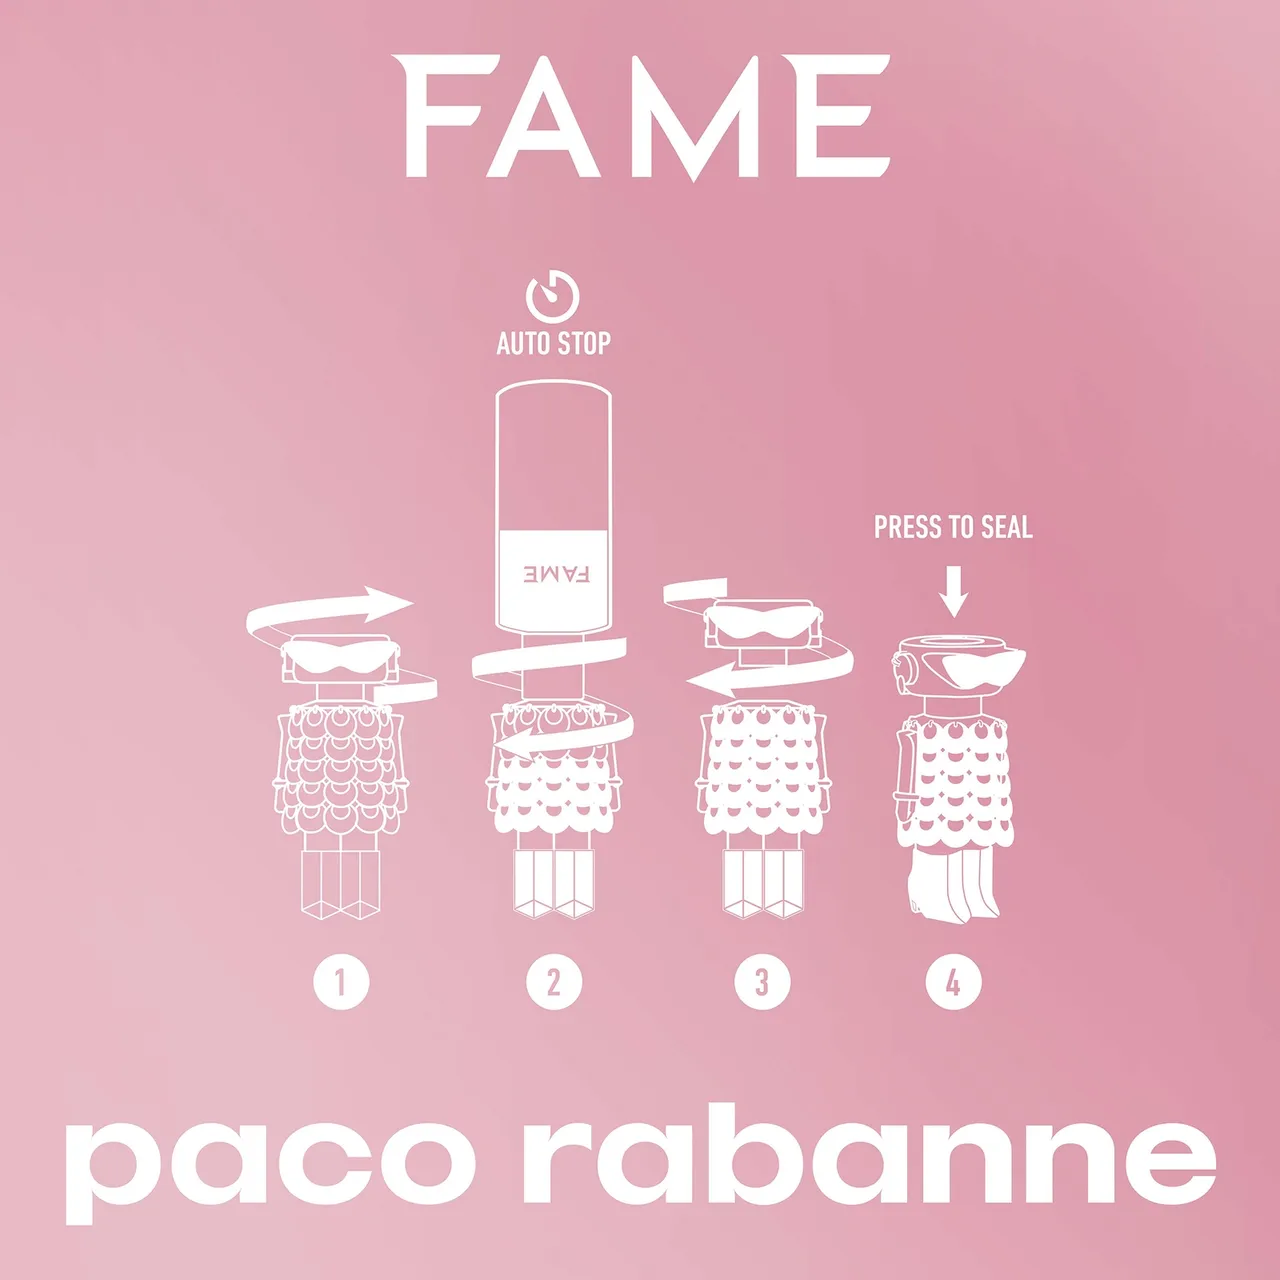 Rabanne Fame Eau De Parfum Refill Bottle 200ml